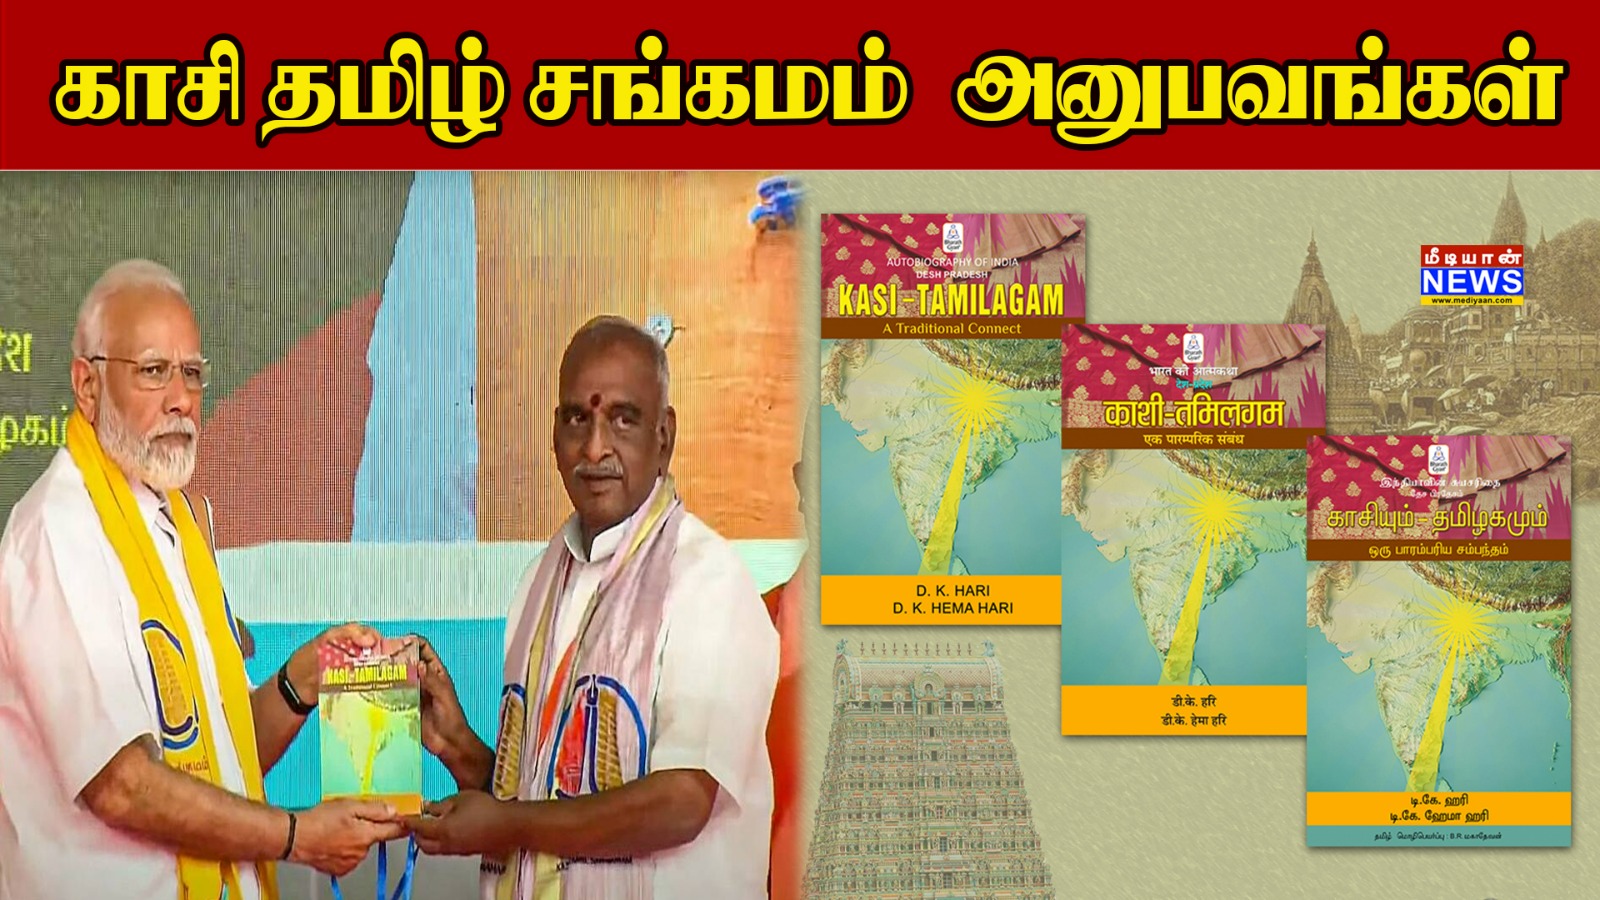 காசி தமிழ் சங்கமம் – அனுபவங்கள் | Kashi Tamil Sangamam | D.K.Hari & D.K.Hema Hari